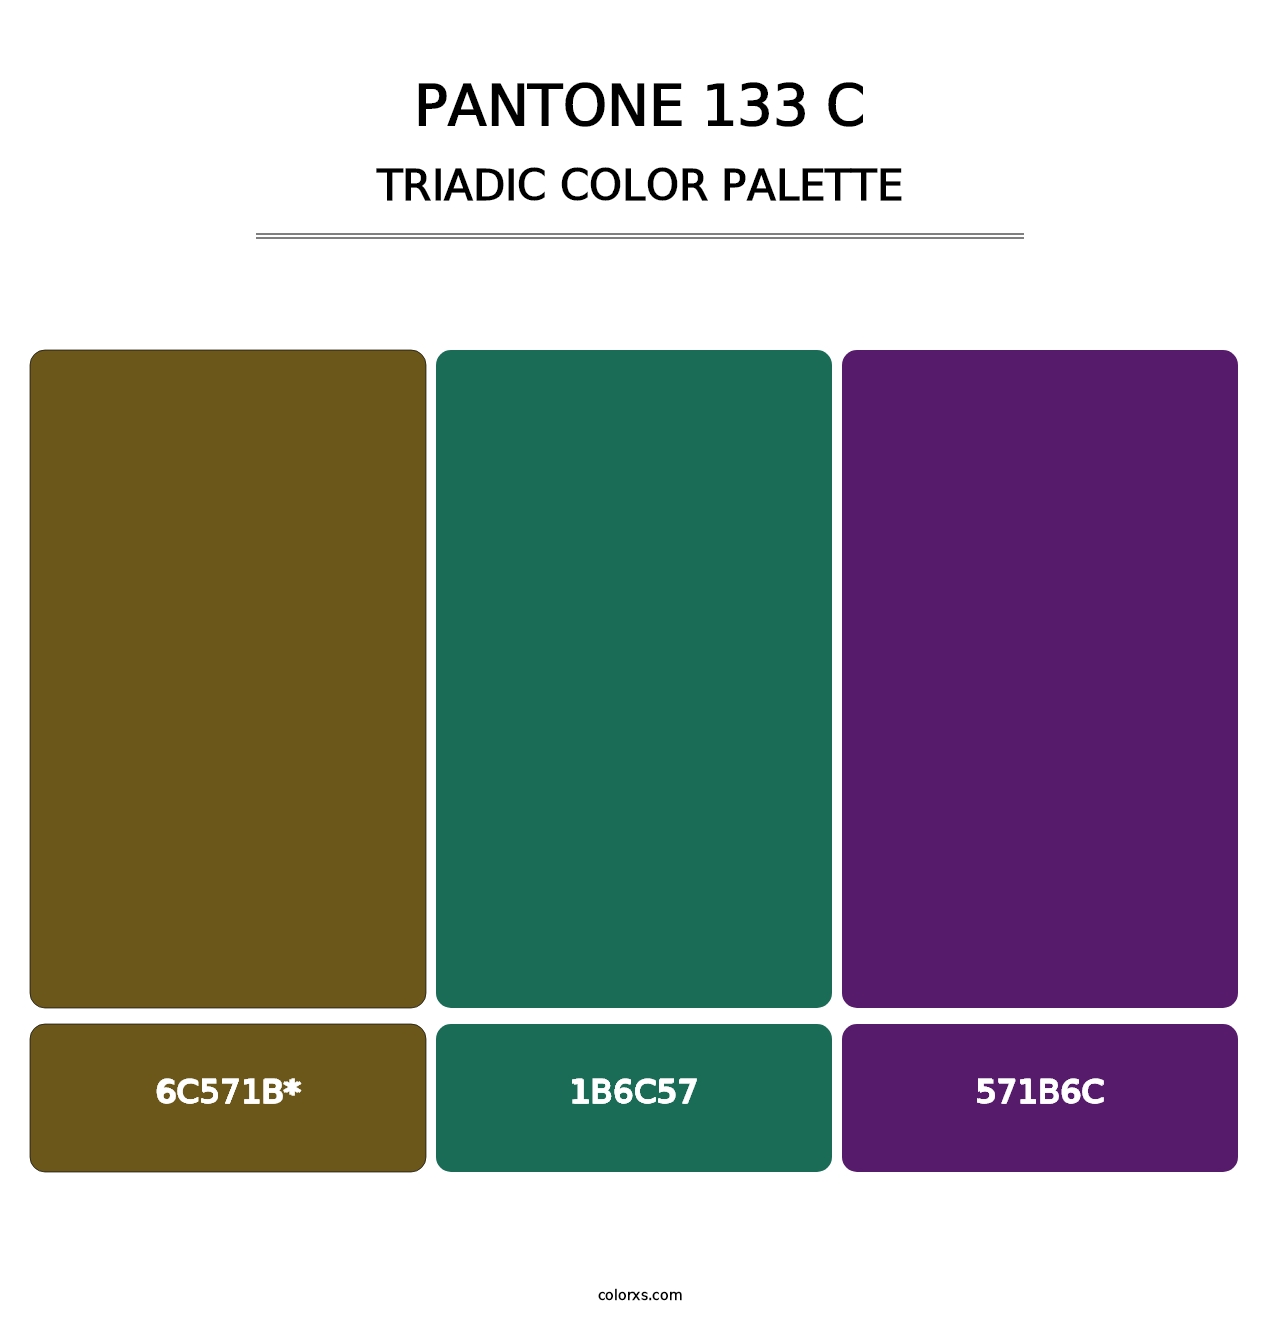 PANTONE 133 C - Triadic Color Palette